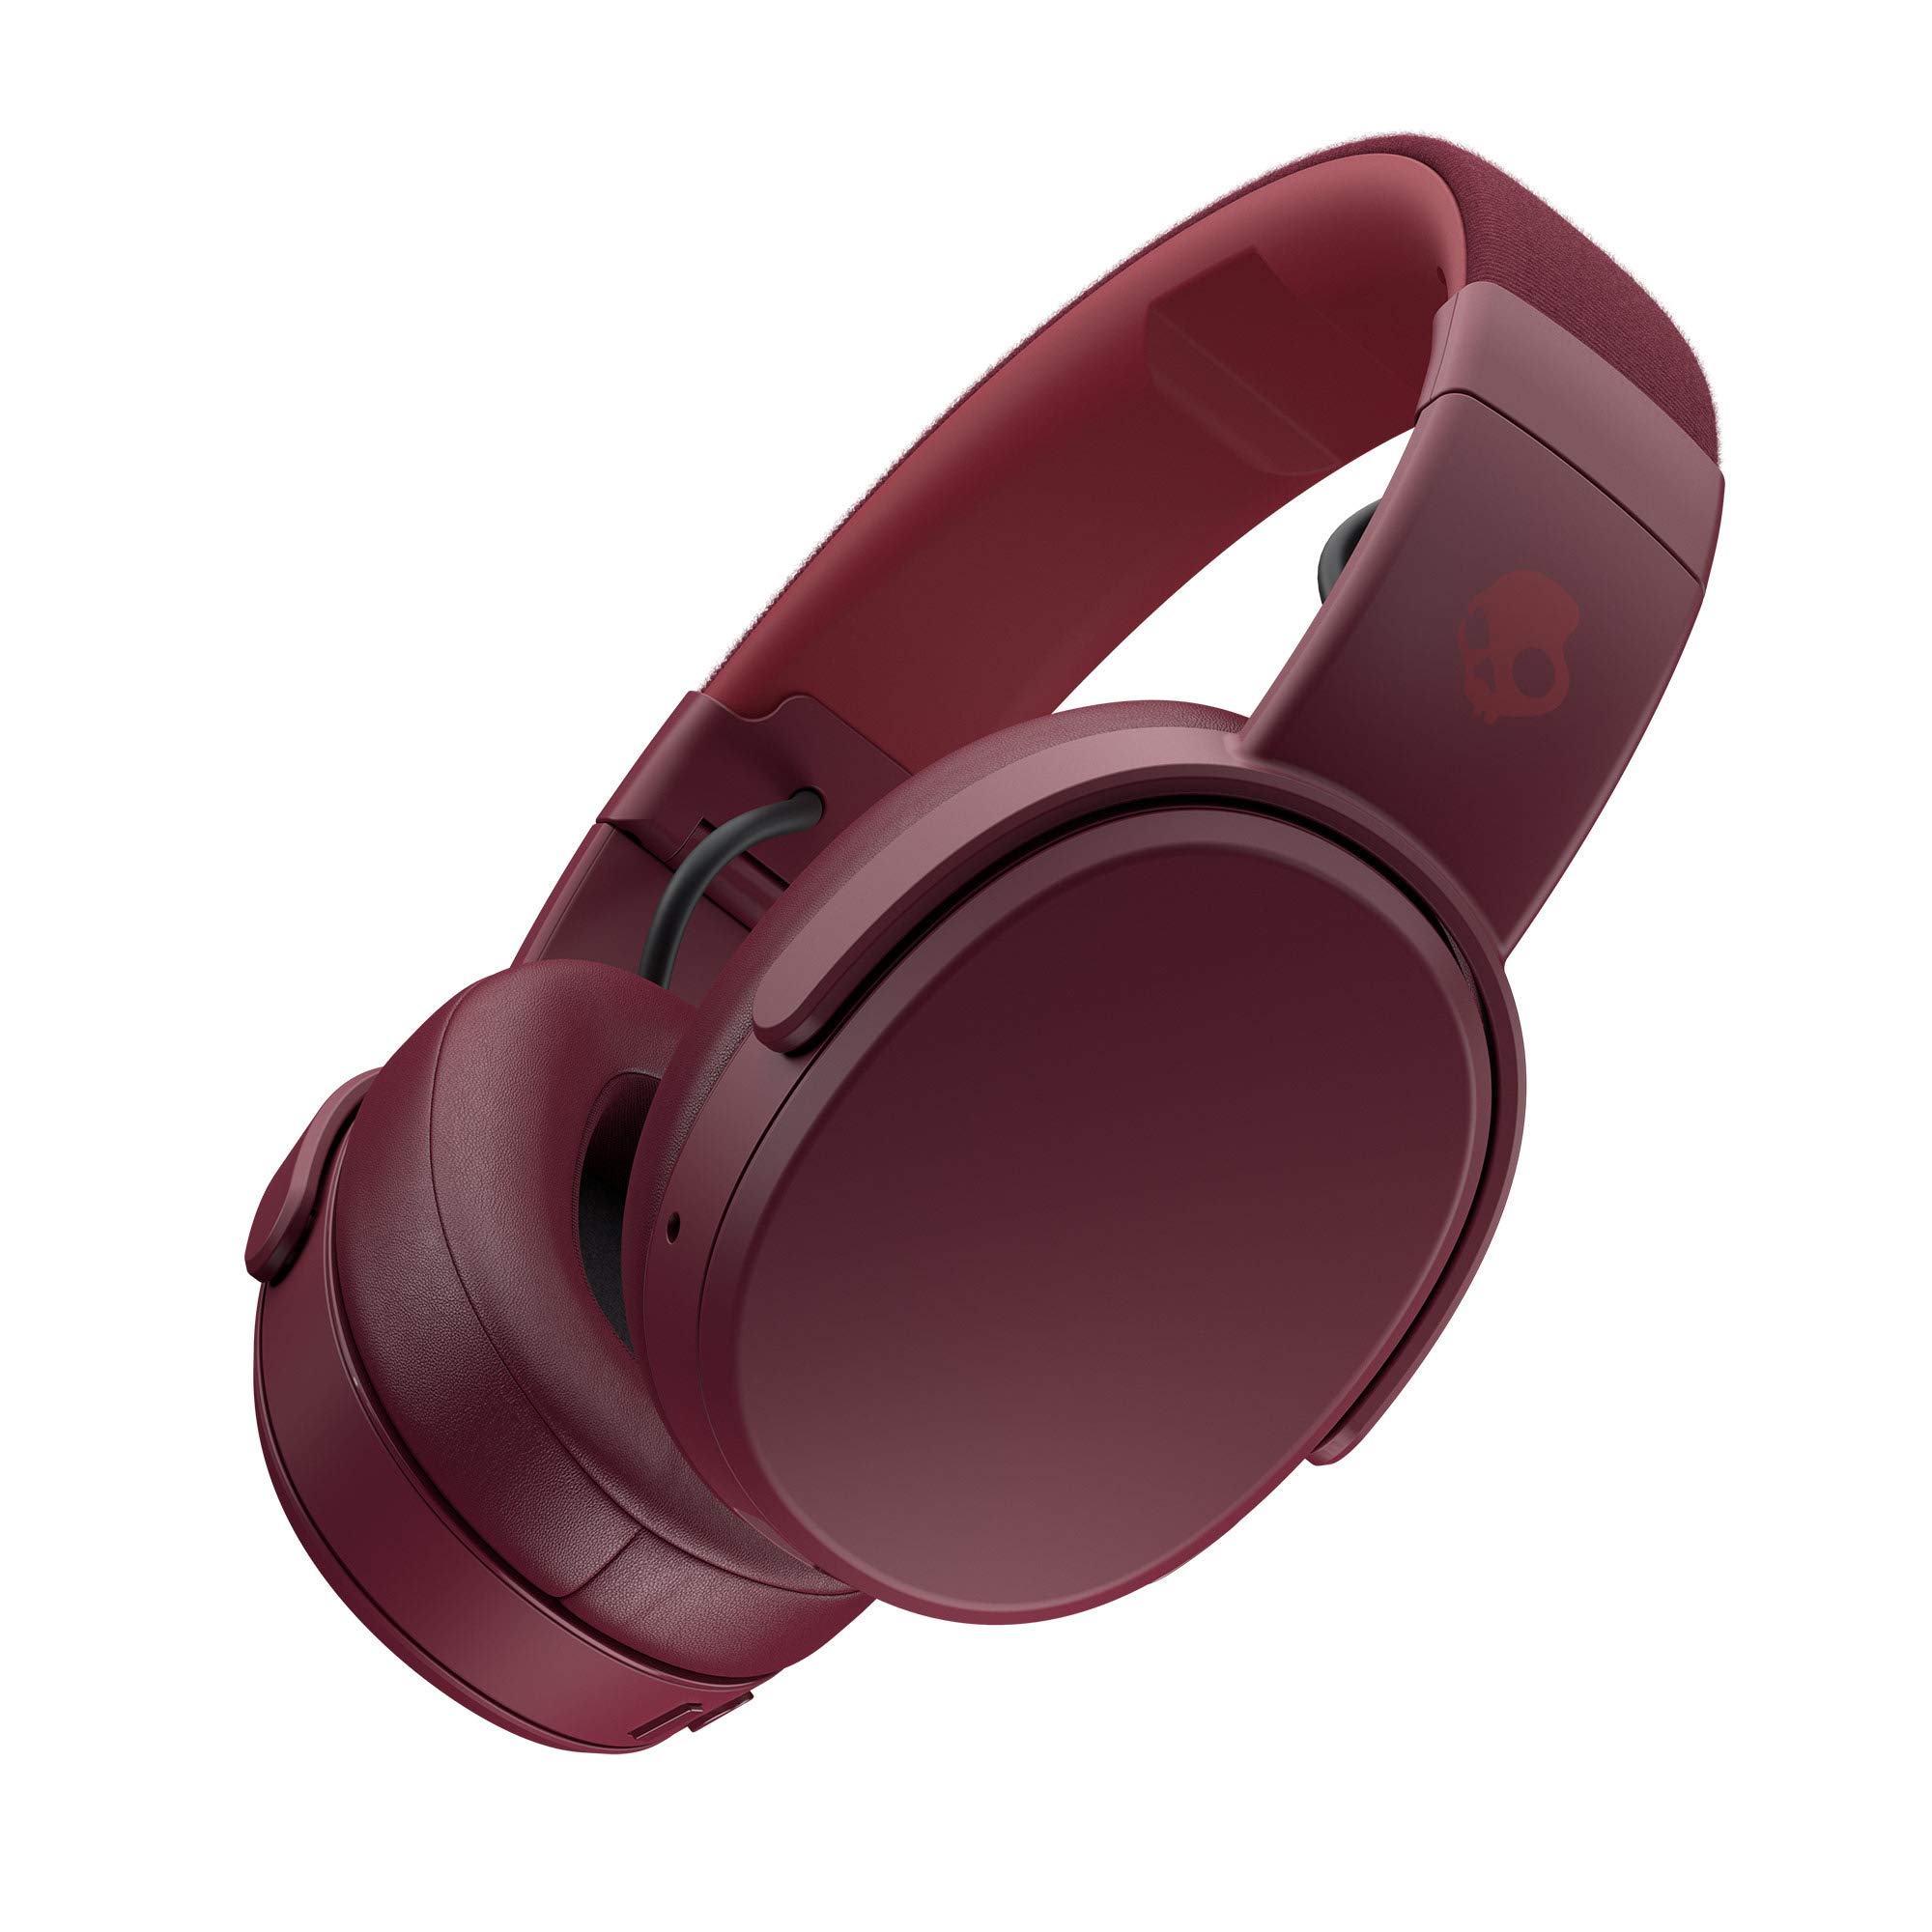 Skullcandy Crusher Wireless Over-Ear Headphones - Deep Red